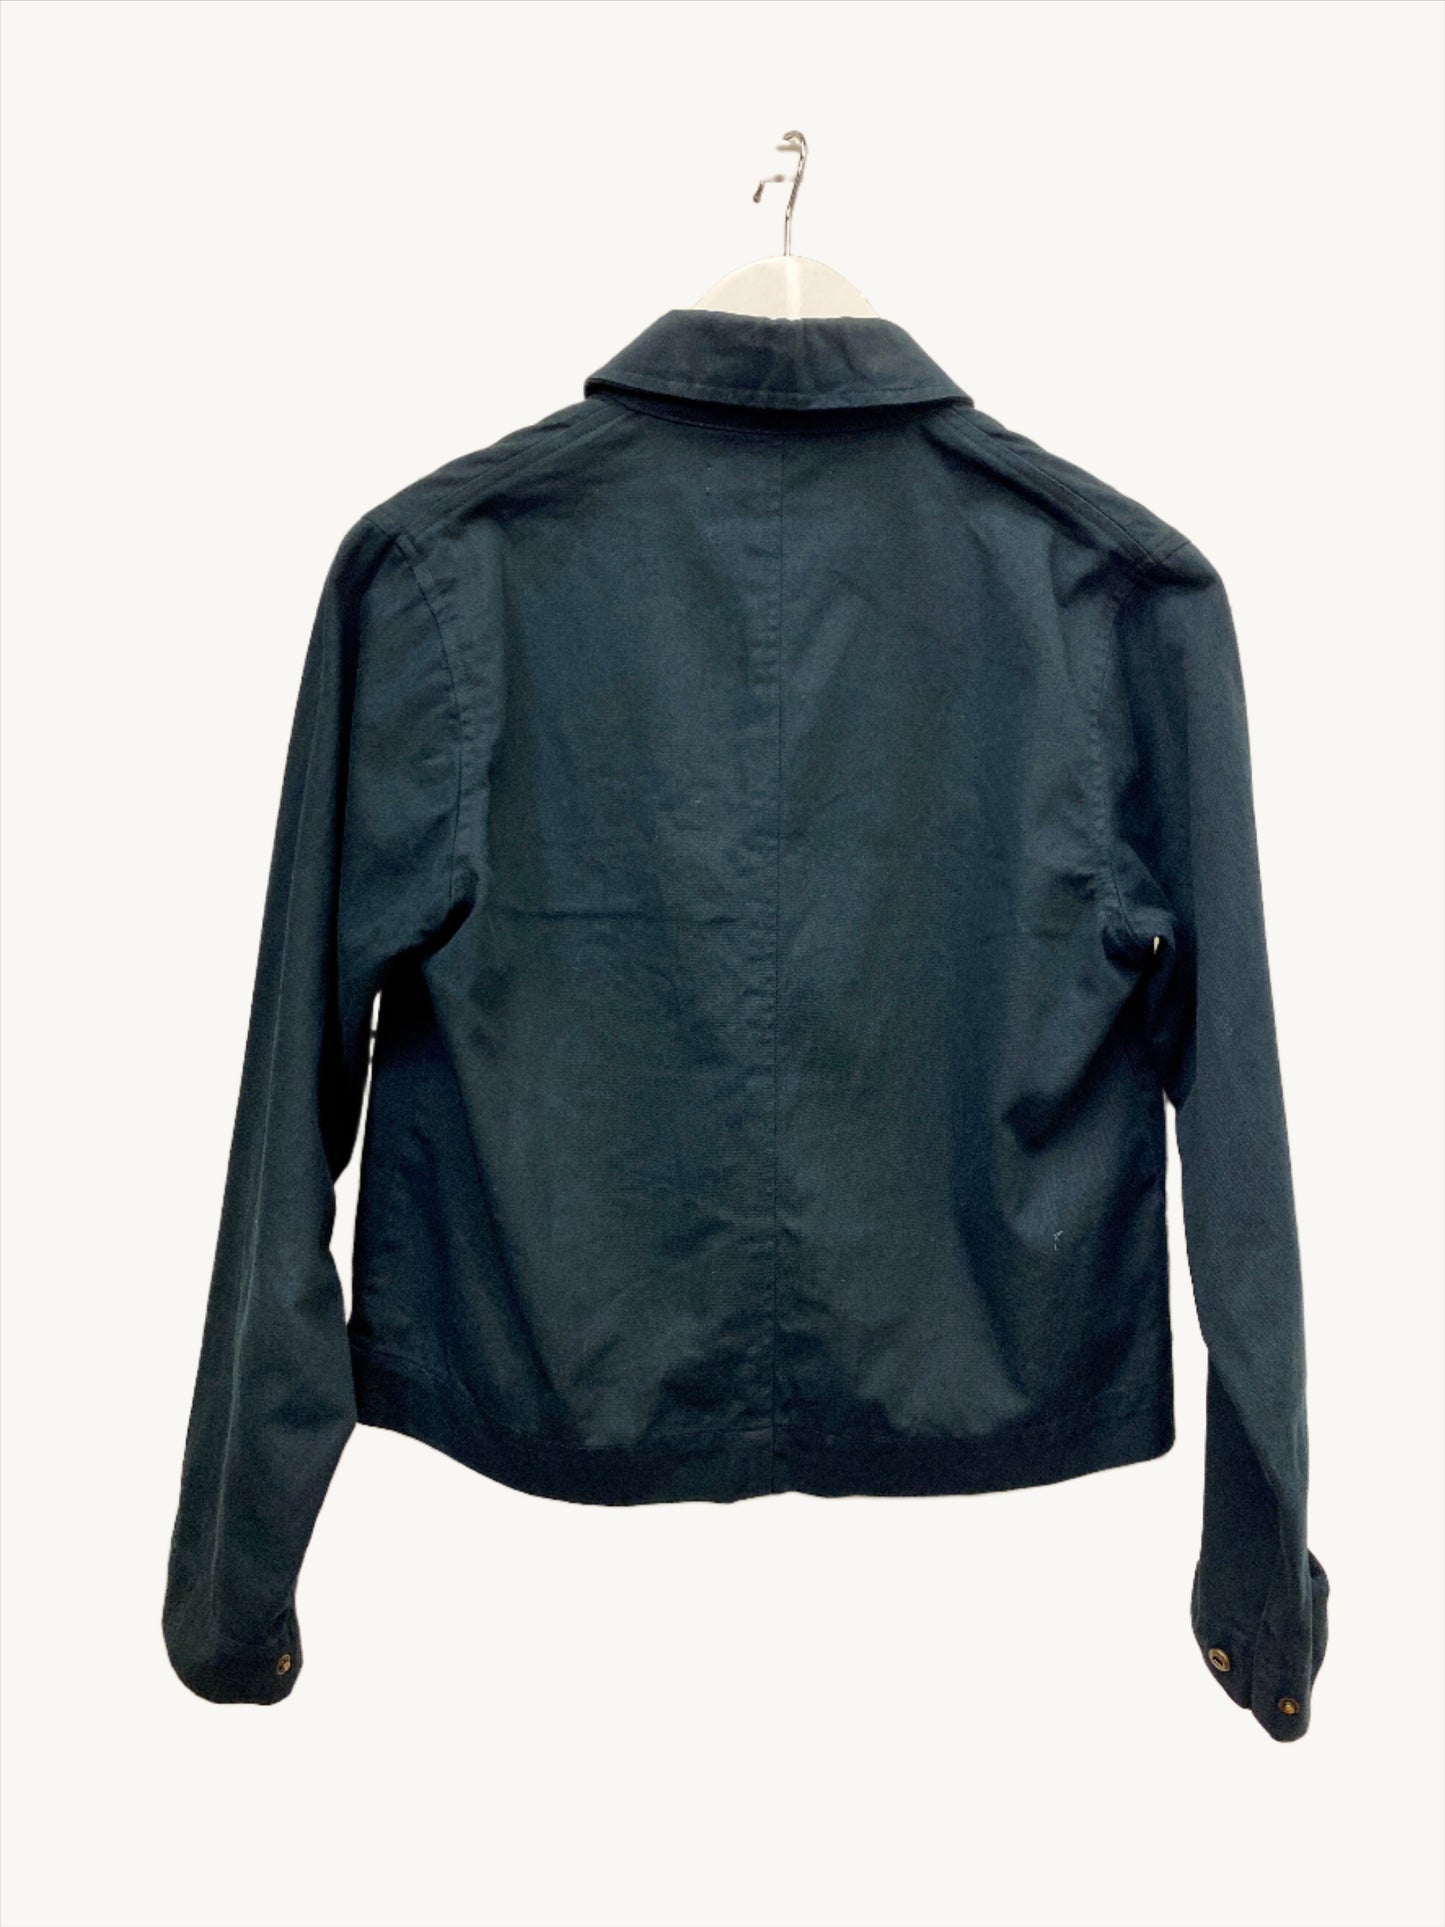 Size 8 - Handsom Jacket